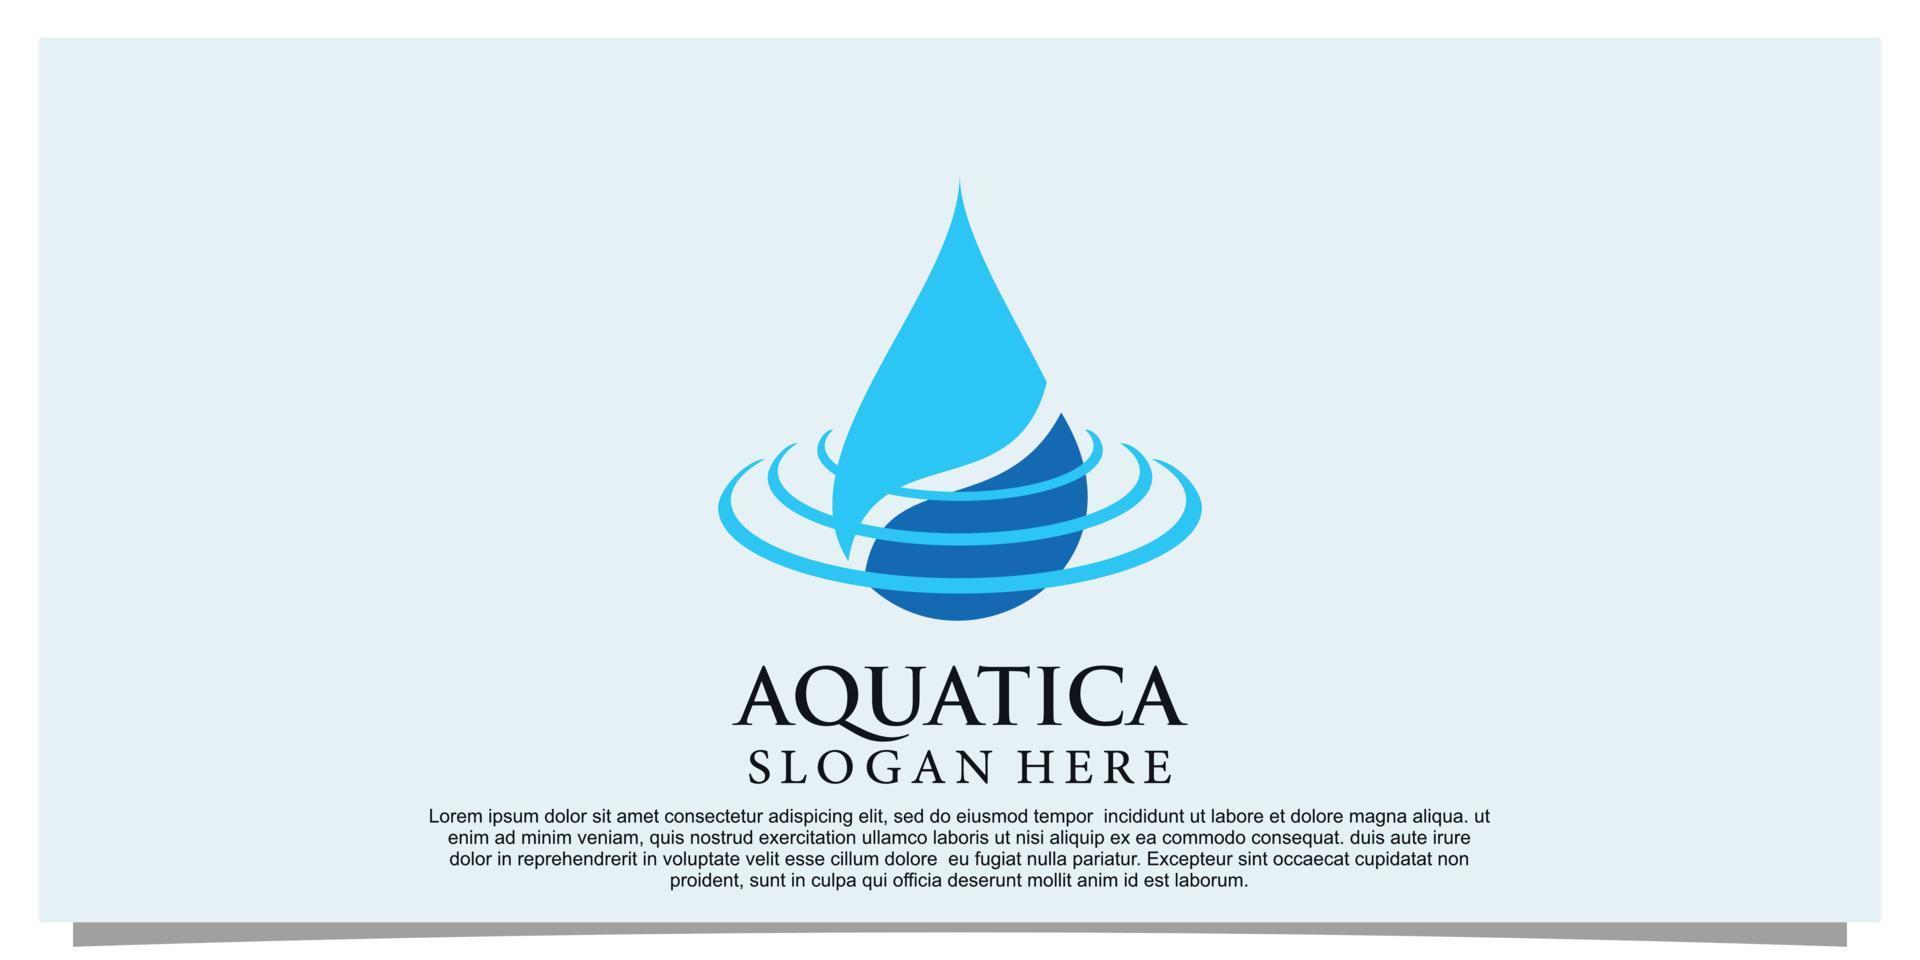 Wasser-Logo-Design mit Splash-Effekt einfaches Konzept Premium-Vektor Teil 4 vektor